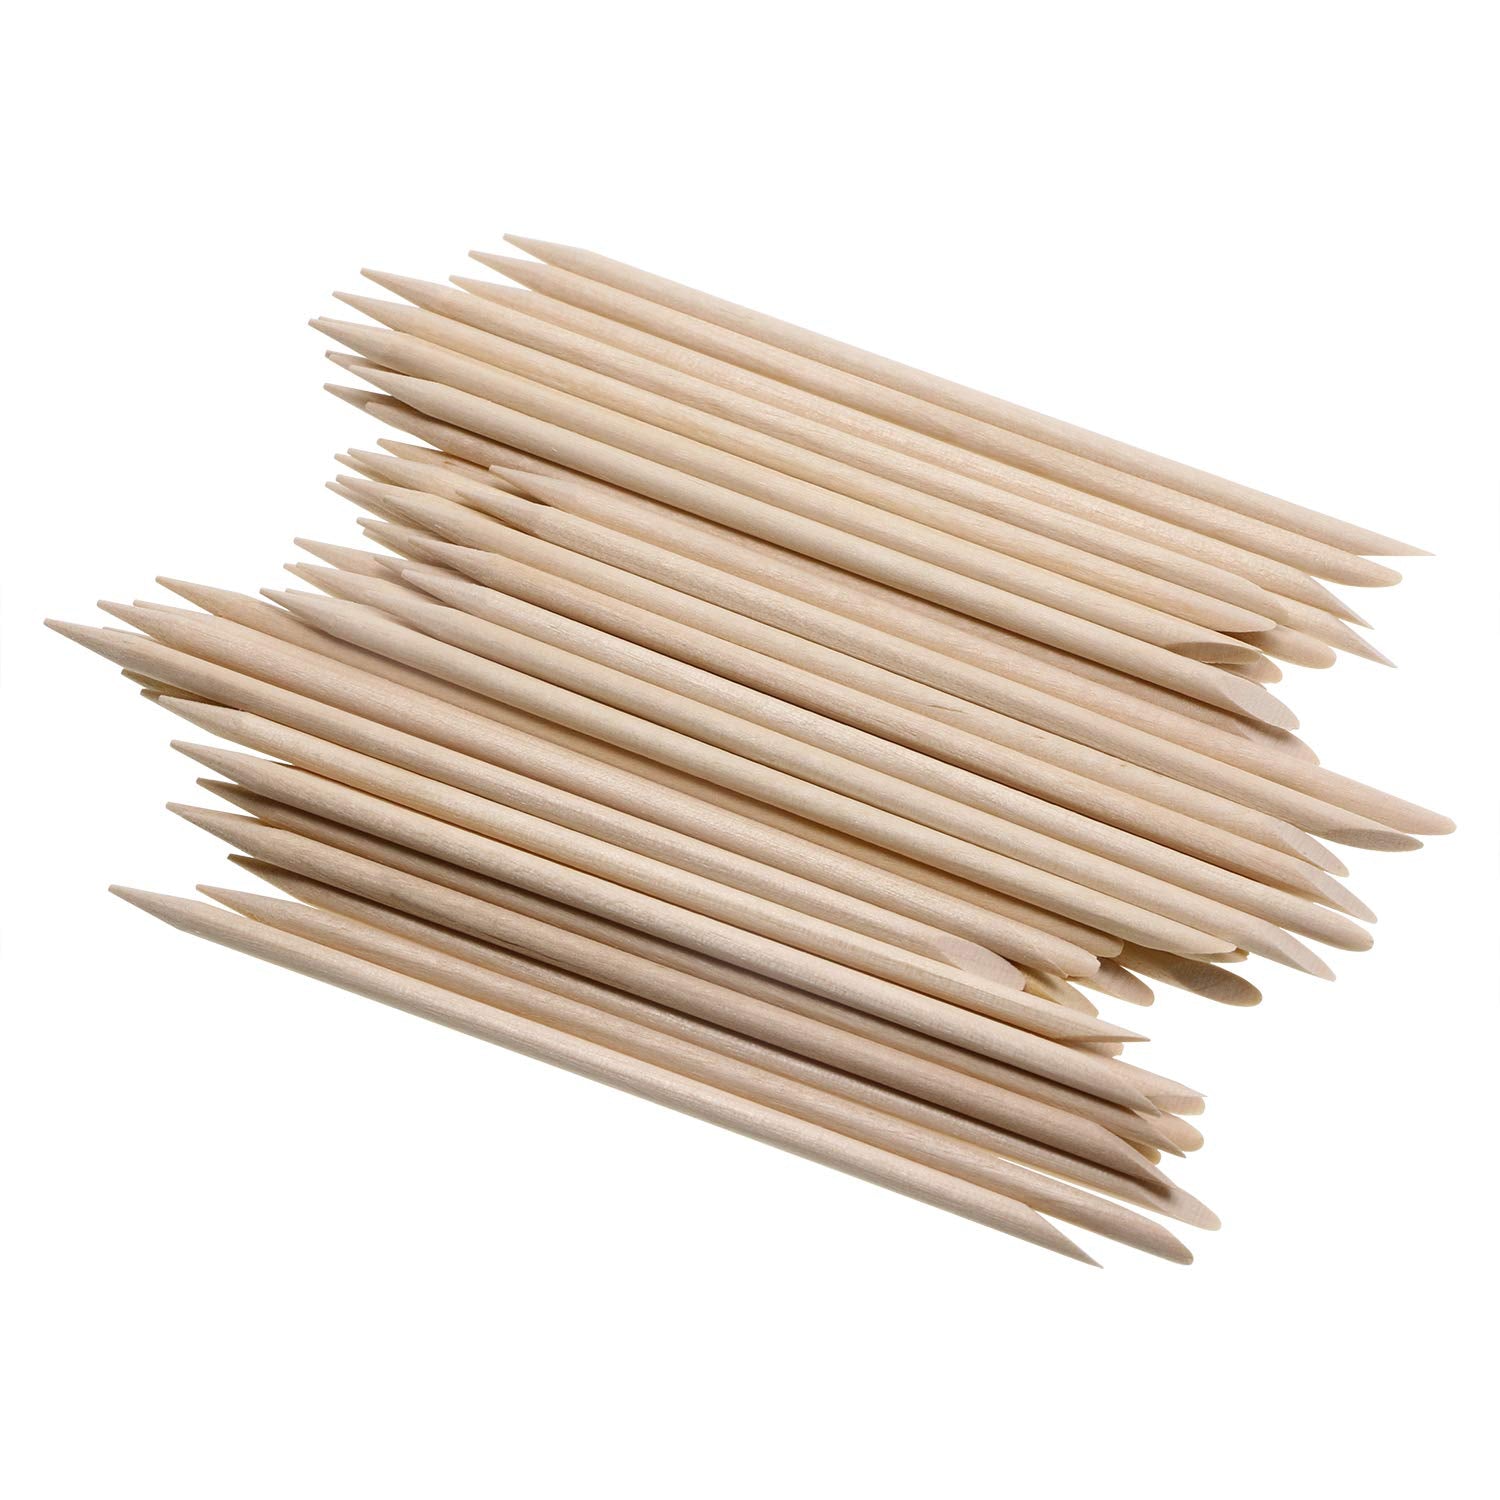 100/pcs Orange Wood Sticks 4 - Slant/Point